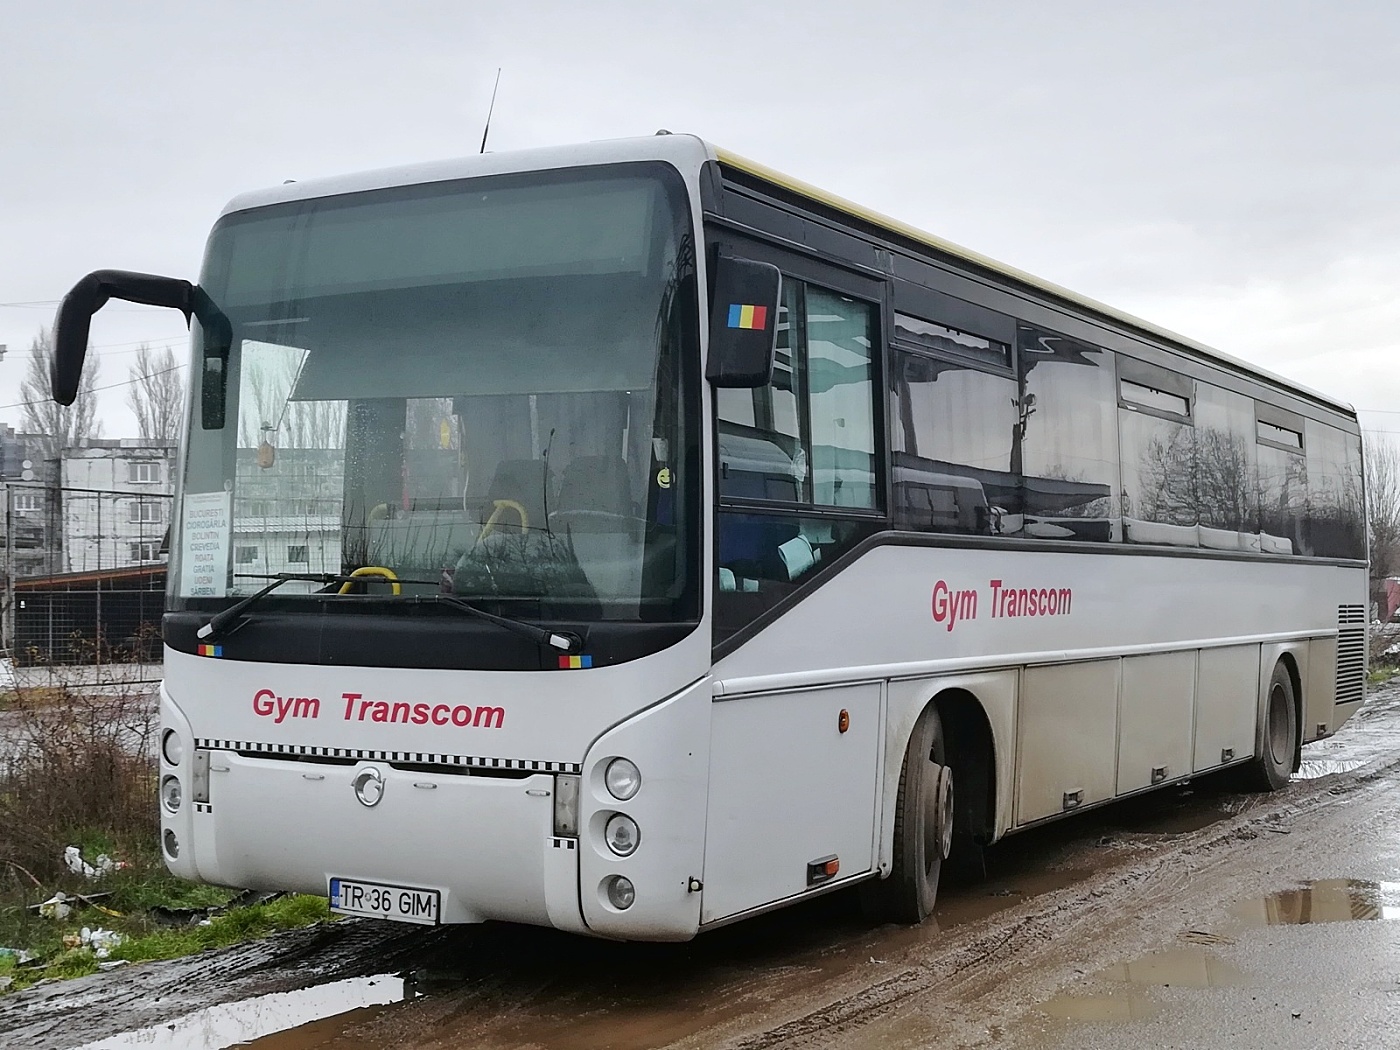 Irisbus Ares 12.8M #TR 36 GIM